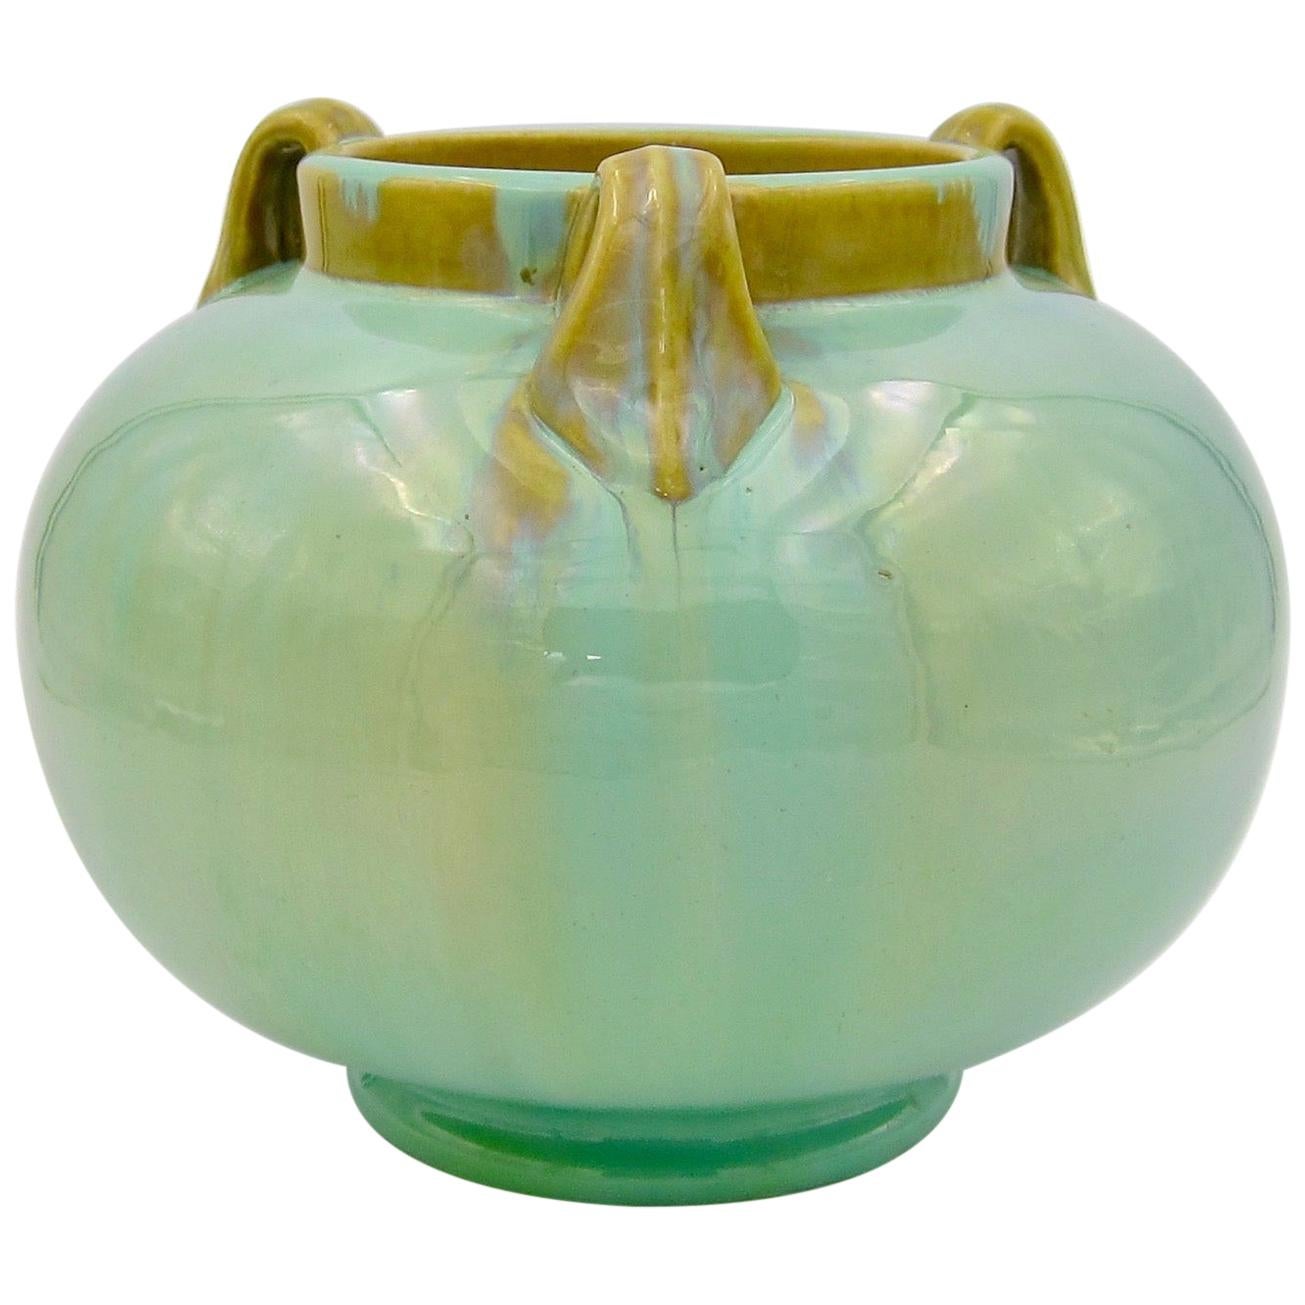 Vintage Fulper Pottery Three Handled Vase with a Flambé Glaze